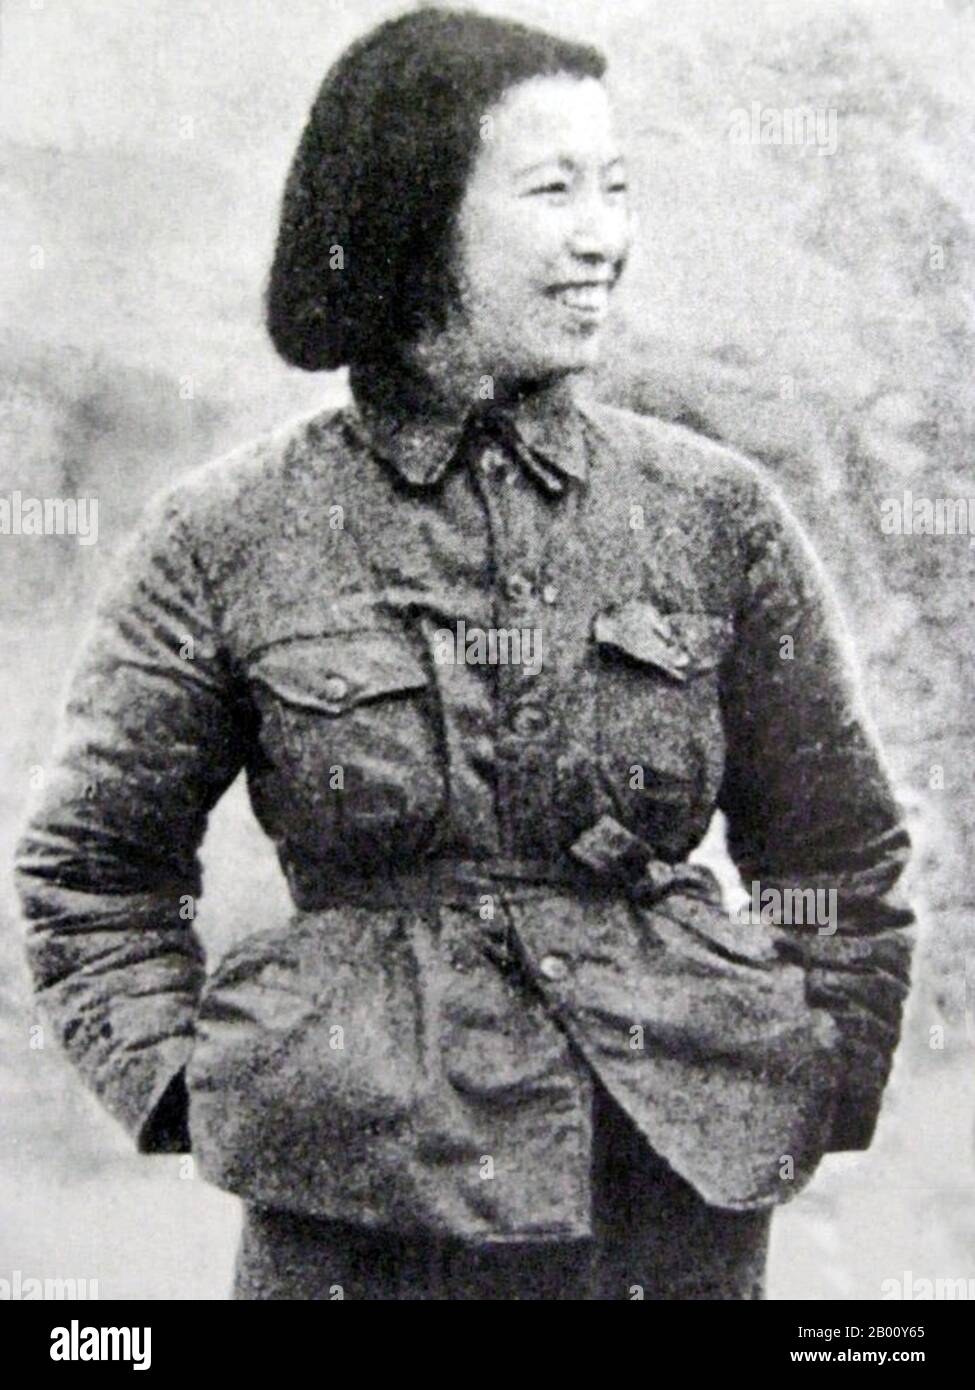 Chine : une image rare du jeune Jiang Qing (1914-1991) dans Ya'an, c. 1938. Jiang Qing (Chiang CH'ing, 1914 mars – 14 mai 1991), nom de naissance Li Shumeng, était le pseudonyme utilisé par la dernière femme du dirigeant chinois Mao Tsé-toung, un personnage majeur du pouvoir du Parti communiste chinois. Elle est allée par le nom de scène LAN Ping au cours de sa carrière d'acteur, et a été connu par divers autres noms pendant sa vie. Elle a épousé Mao à Ya'an en novembre 1938, et est parfois appelée Madame Mao dans la littérature occidentale, servant de première dame de la Chine communiste. Banque D'Images